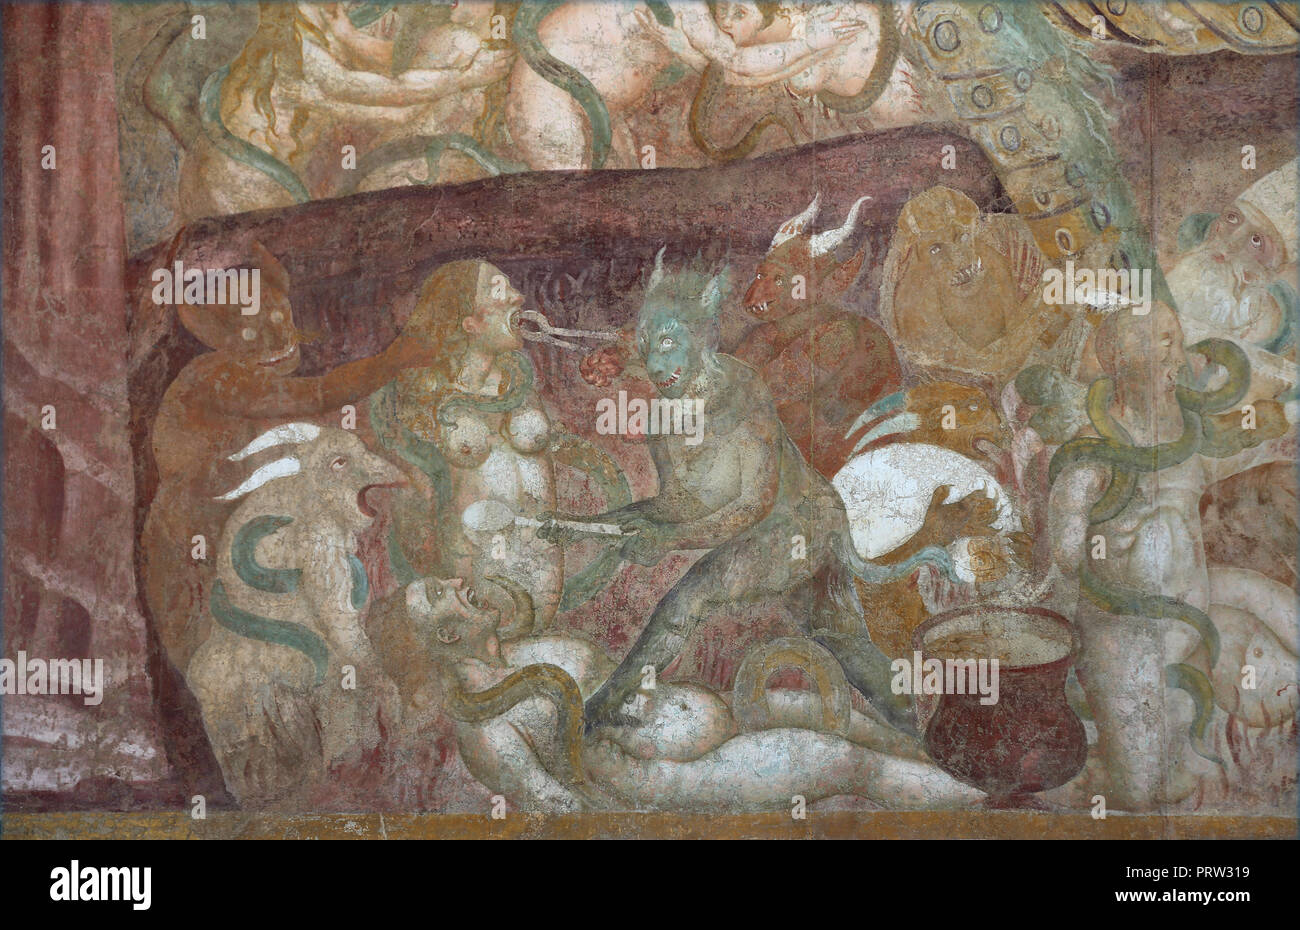 Buonamico Buffalmacco. Il Trionfo della morte. Dettaglio "l'inferno". Tormenti. 1338-39. Il Camposanto. Pisa. L'Italia. Foto Stock